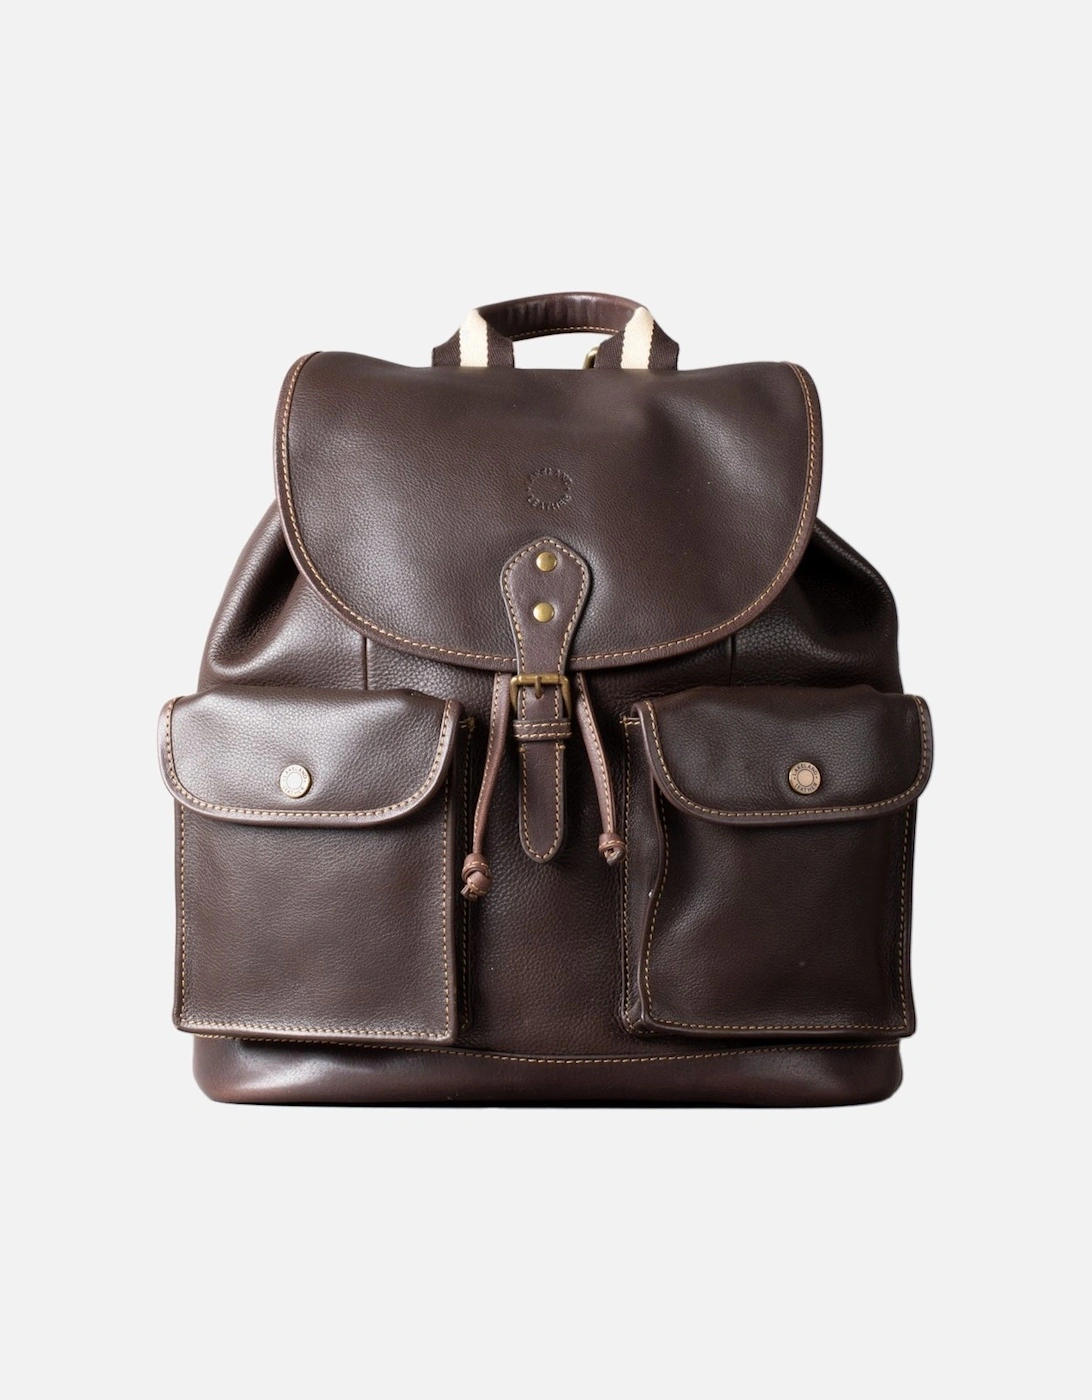 Kelsick Leather Backpack, 6 of 5